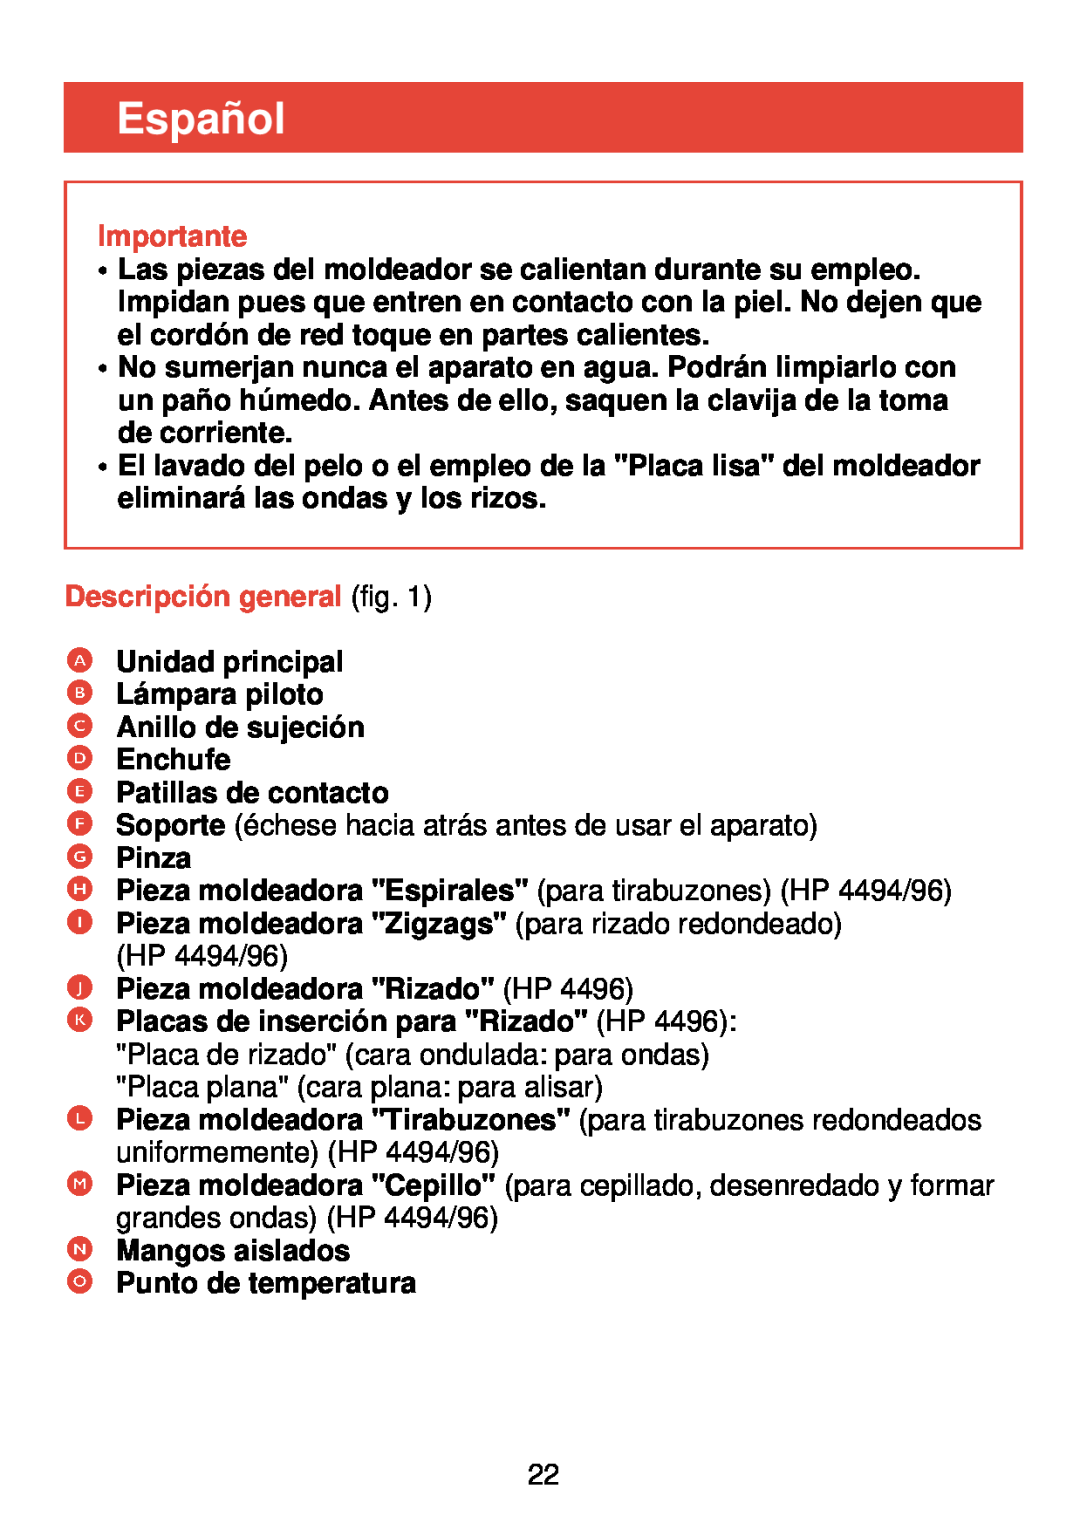 Philips HP 4490, HP 4494, HP 4496 manual Español, Descripción general fig, Importante 